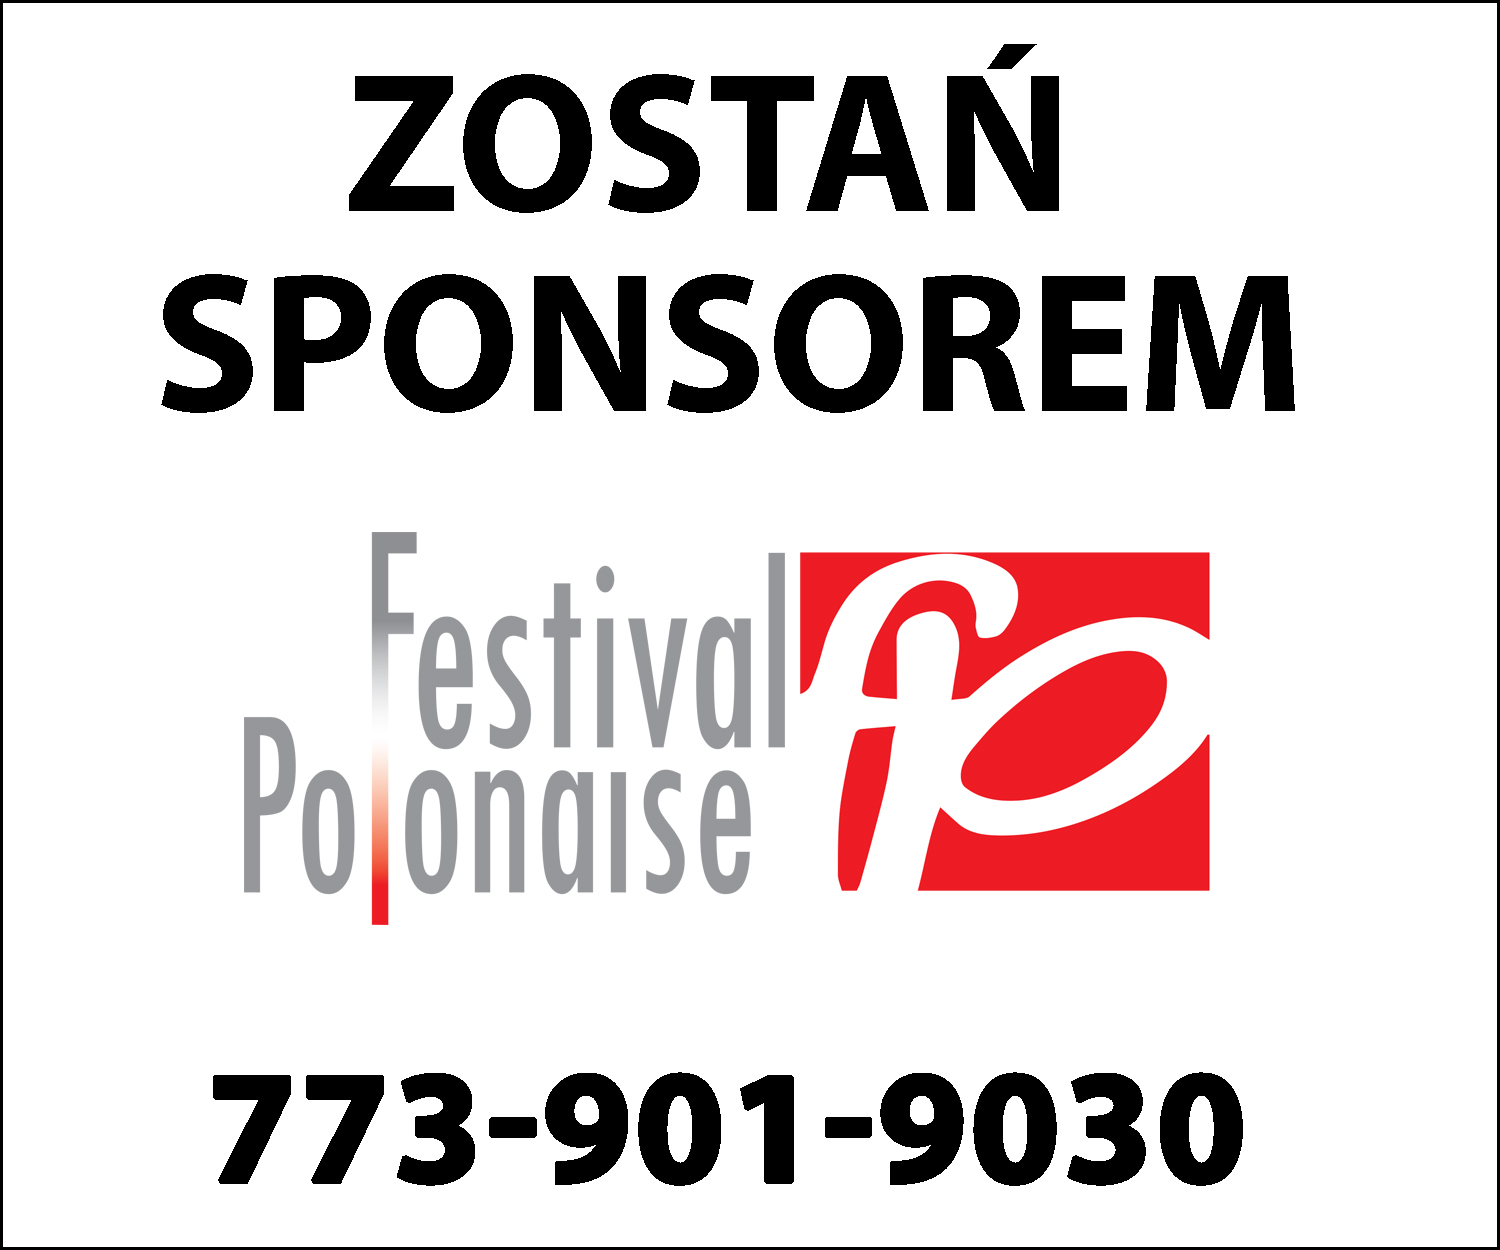 Festival Polonaise 2020 – Zostań sponsorem